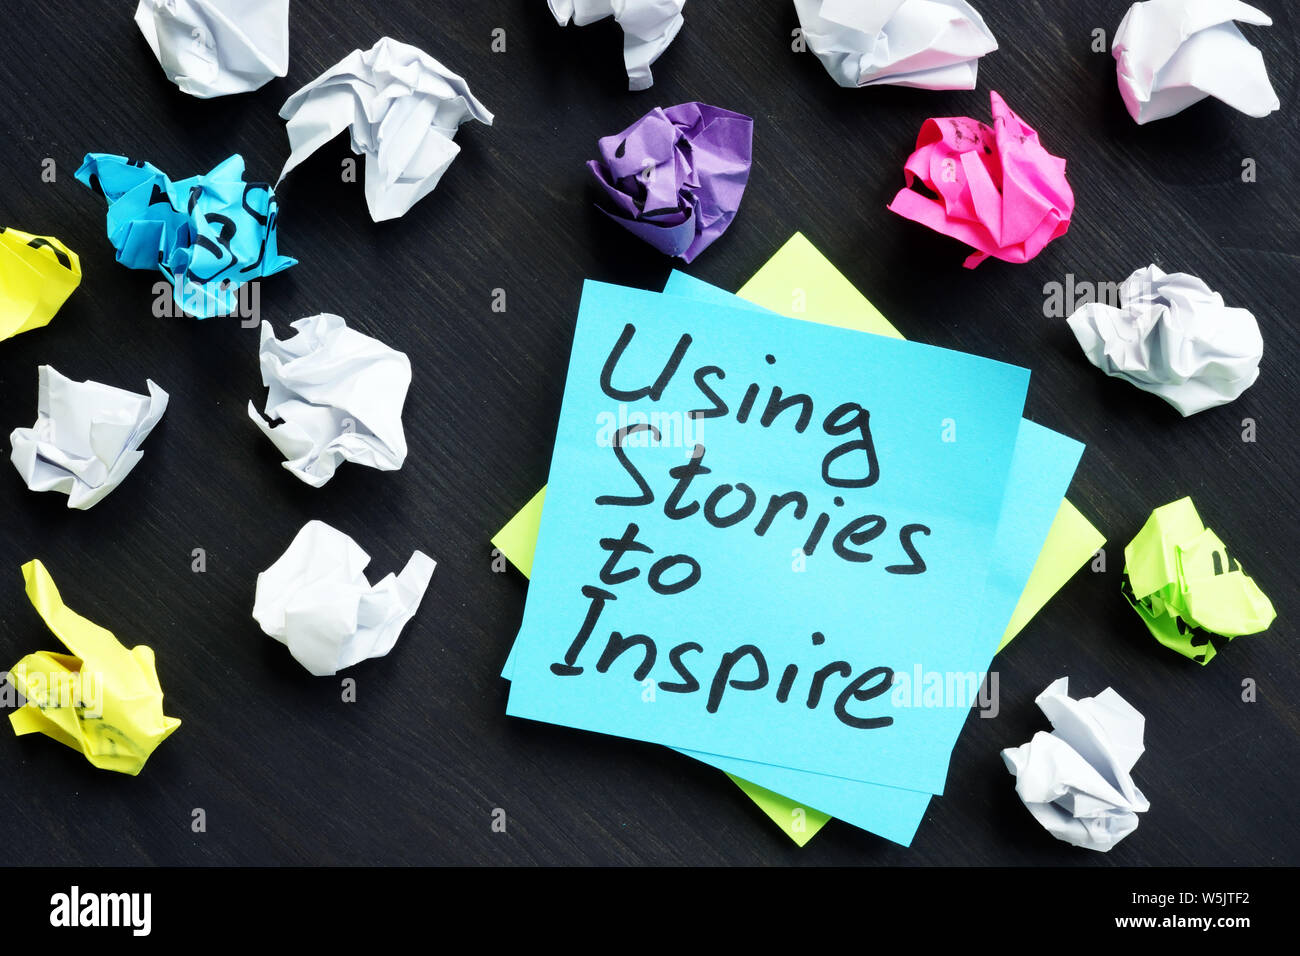 Utilizzando le storie per ispirare. Influenza della narrazione. Foto Stock